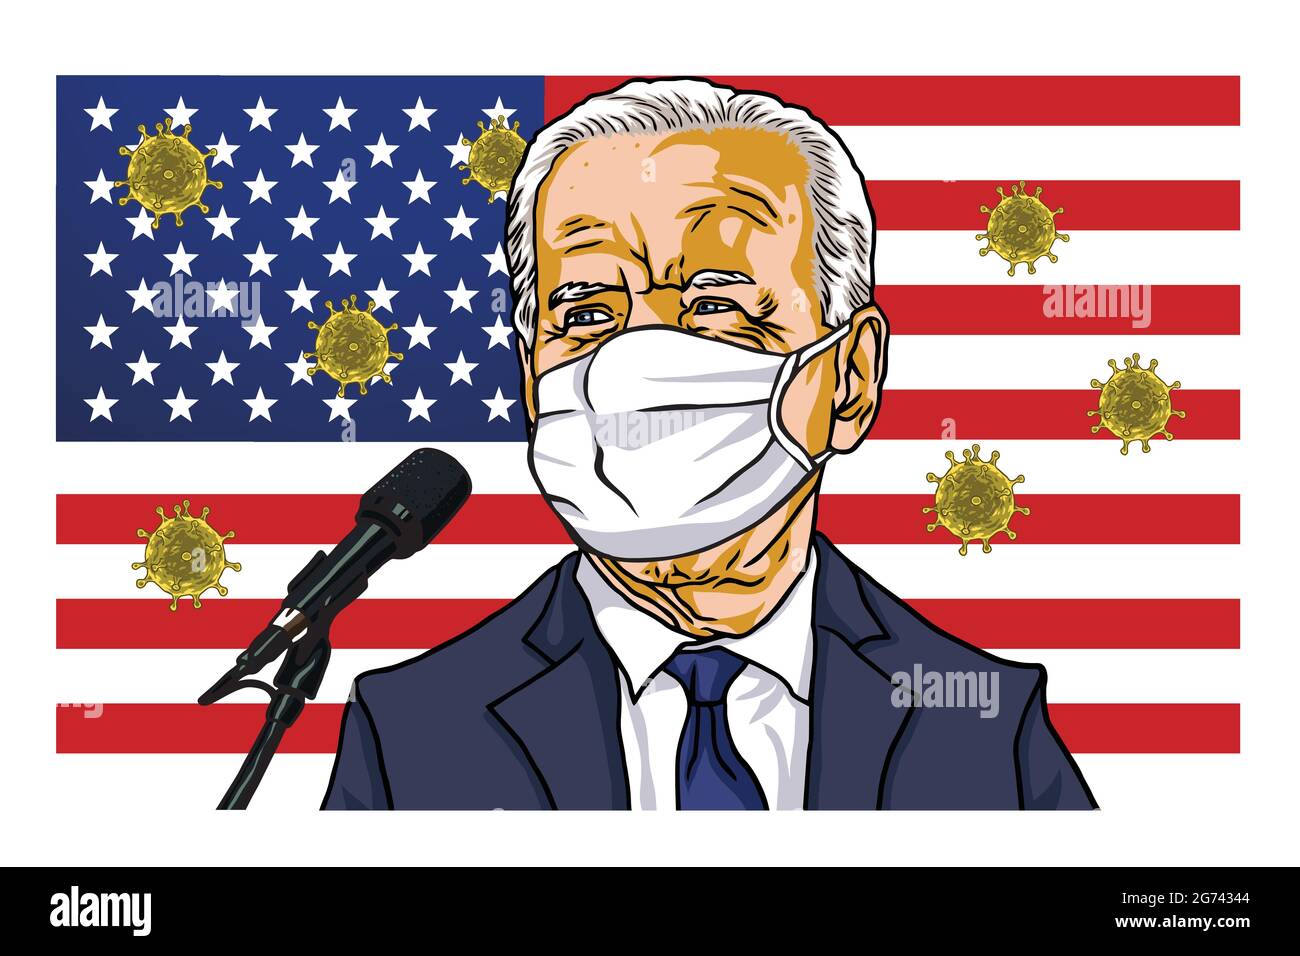 Joe Biden Kampagne Präsidentschaftswahl Debatte Rede Cartoon Karikatur Vektor Illustration mit amerikanischer Flagge Hintergrund. Washington, Den 29. Oktober 20 Stock Vektor